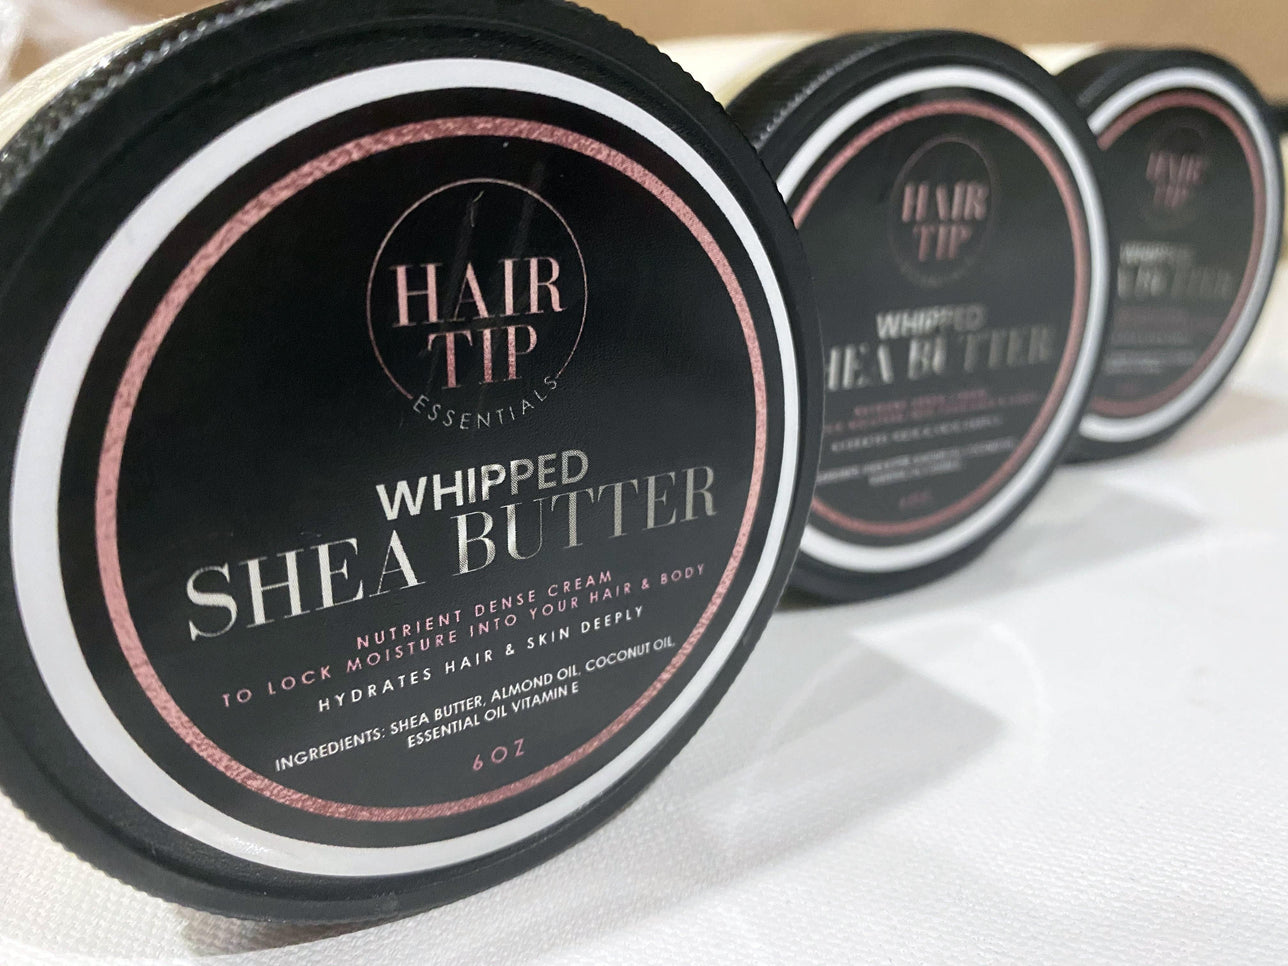 Whipped Shea - Hair Tip Essentials